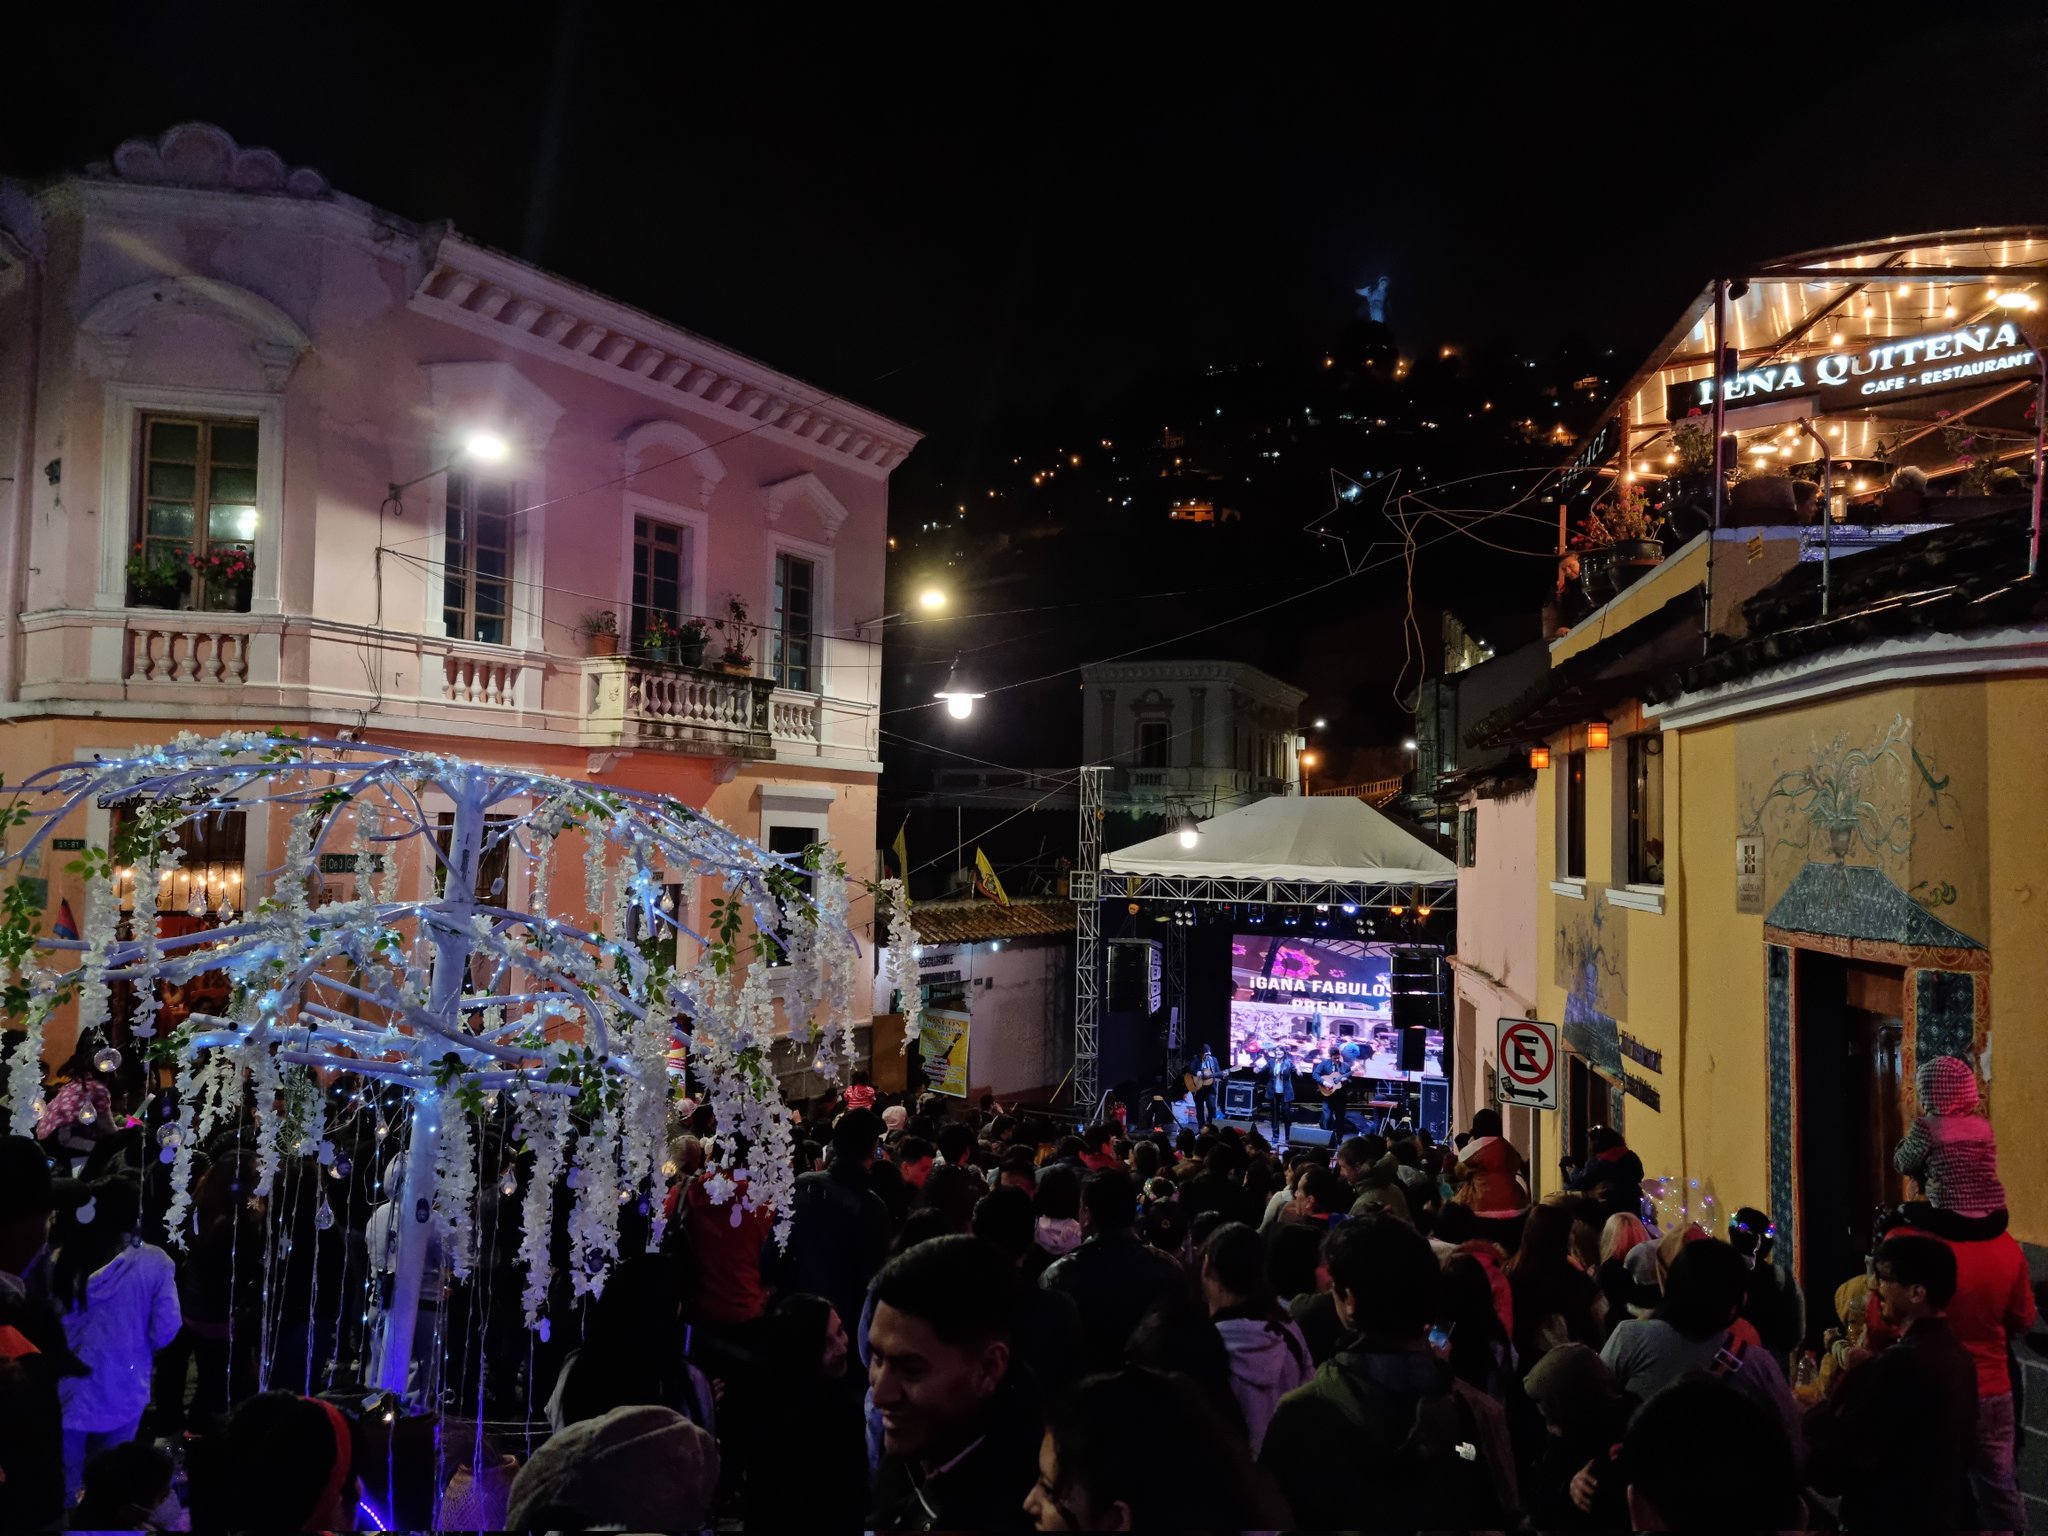 La Ronda ofrece presentaciones de artistas durante la tarde noche. Foto: Quito Turismo